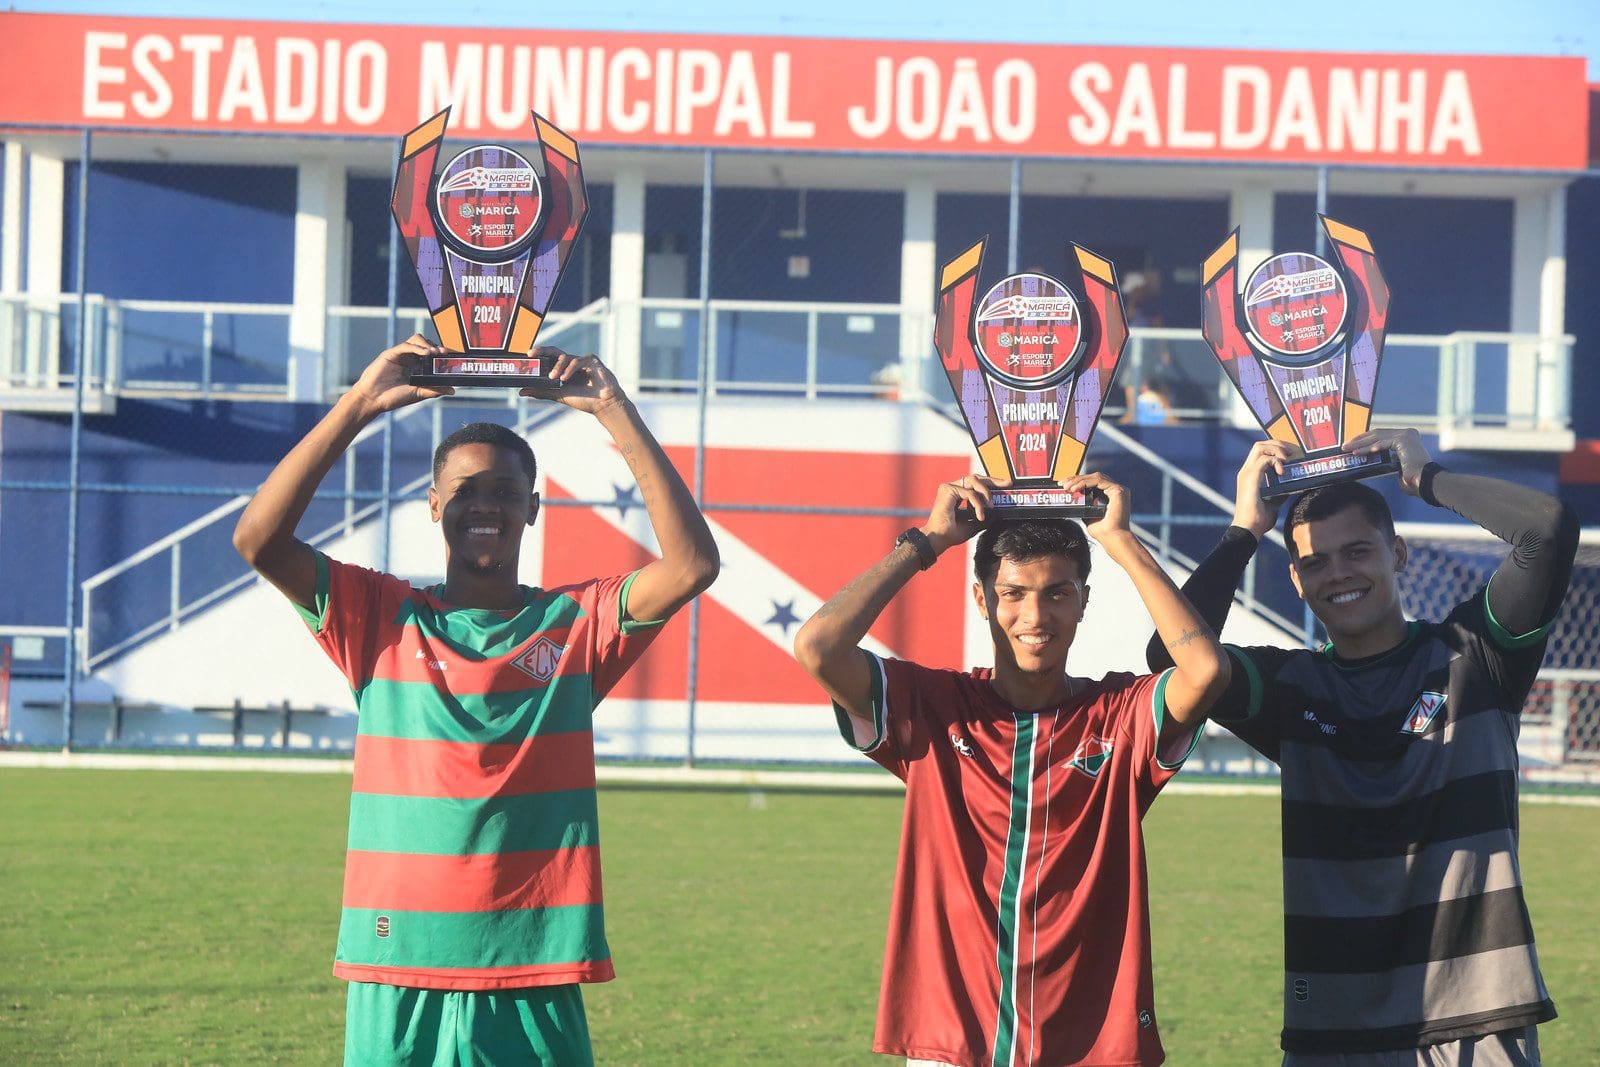 Final da Taça Cidade de Maricá atrai moradores ao Estádio Municipal João Saldanha